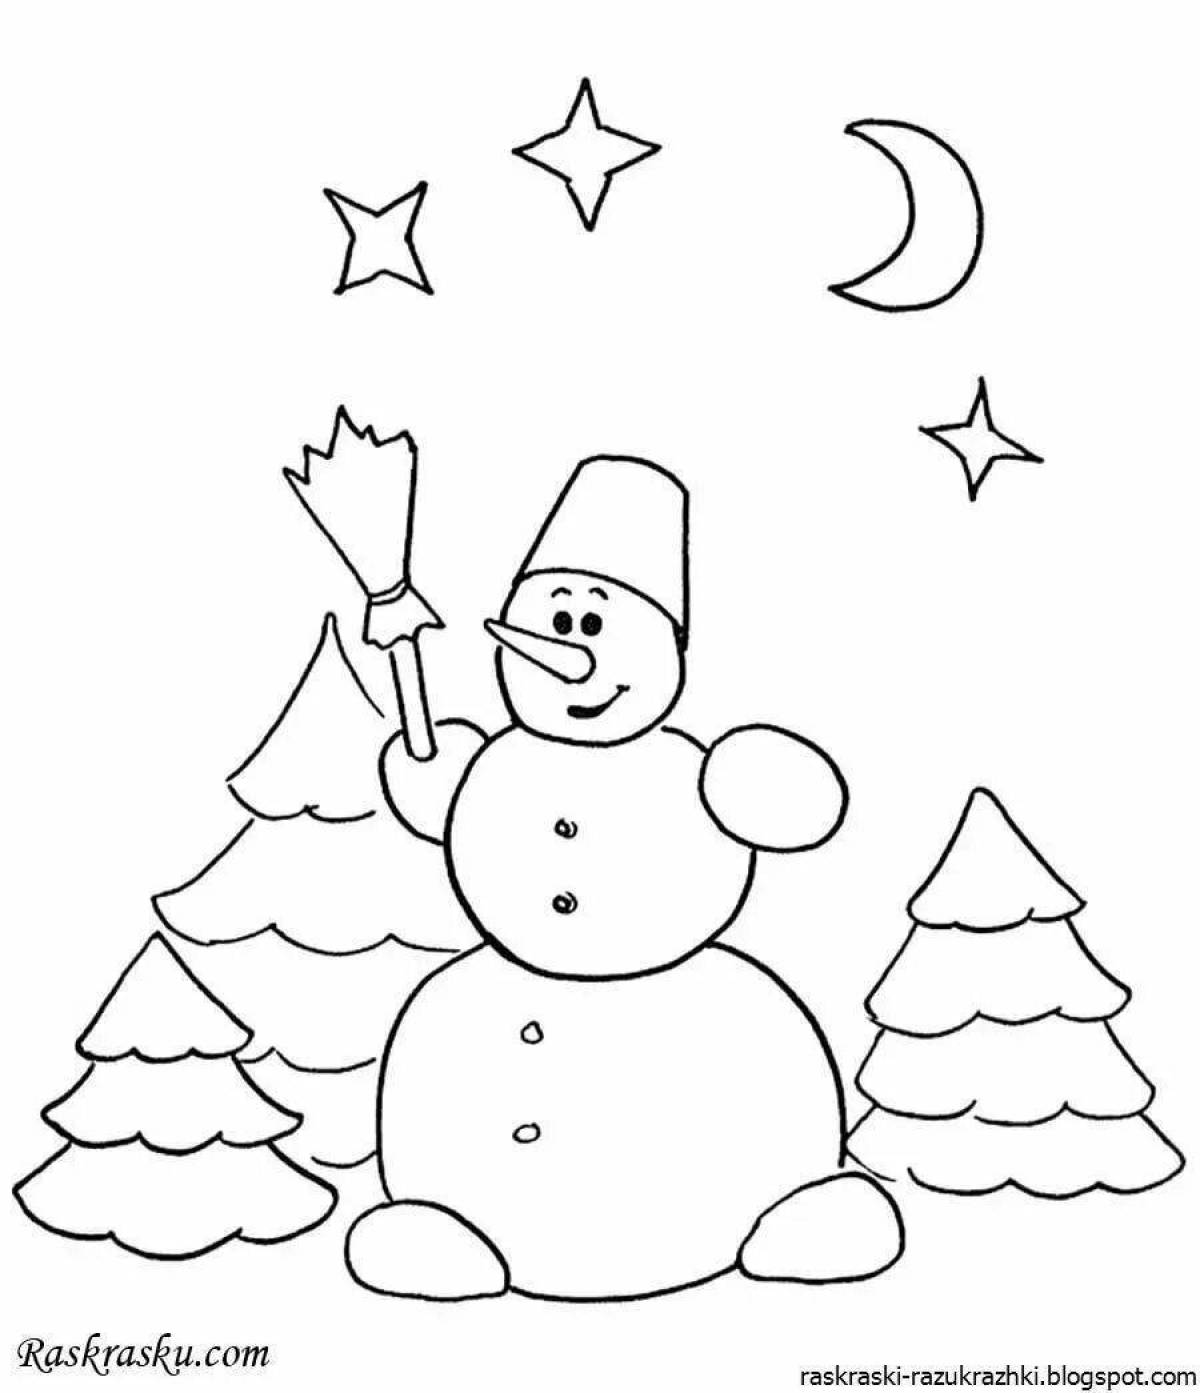 Яркие раскраски снеговик для детей 6-7 лет